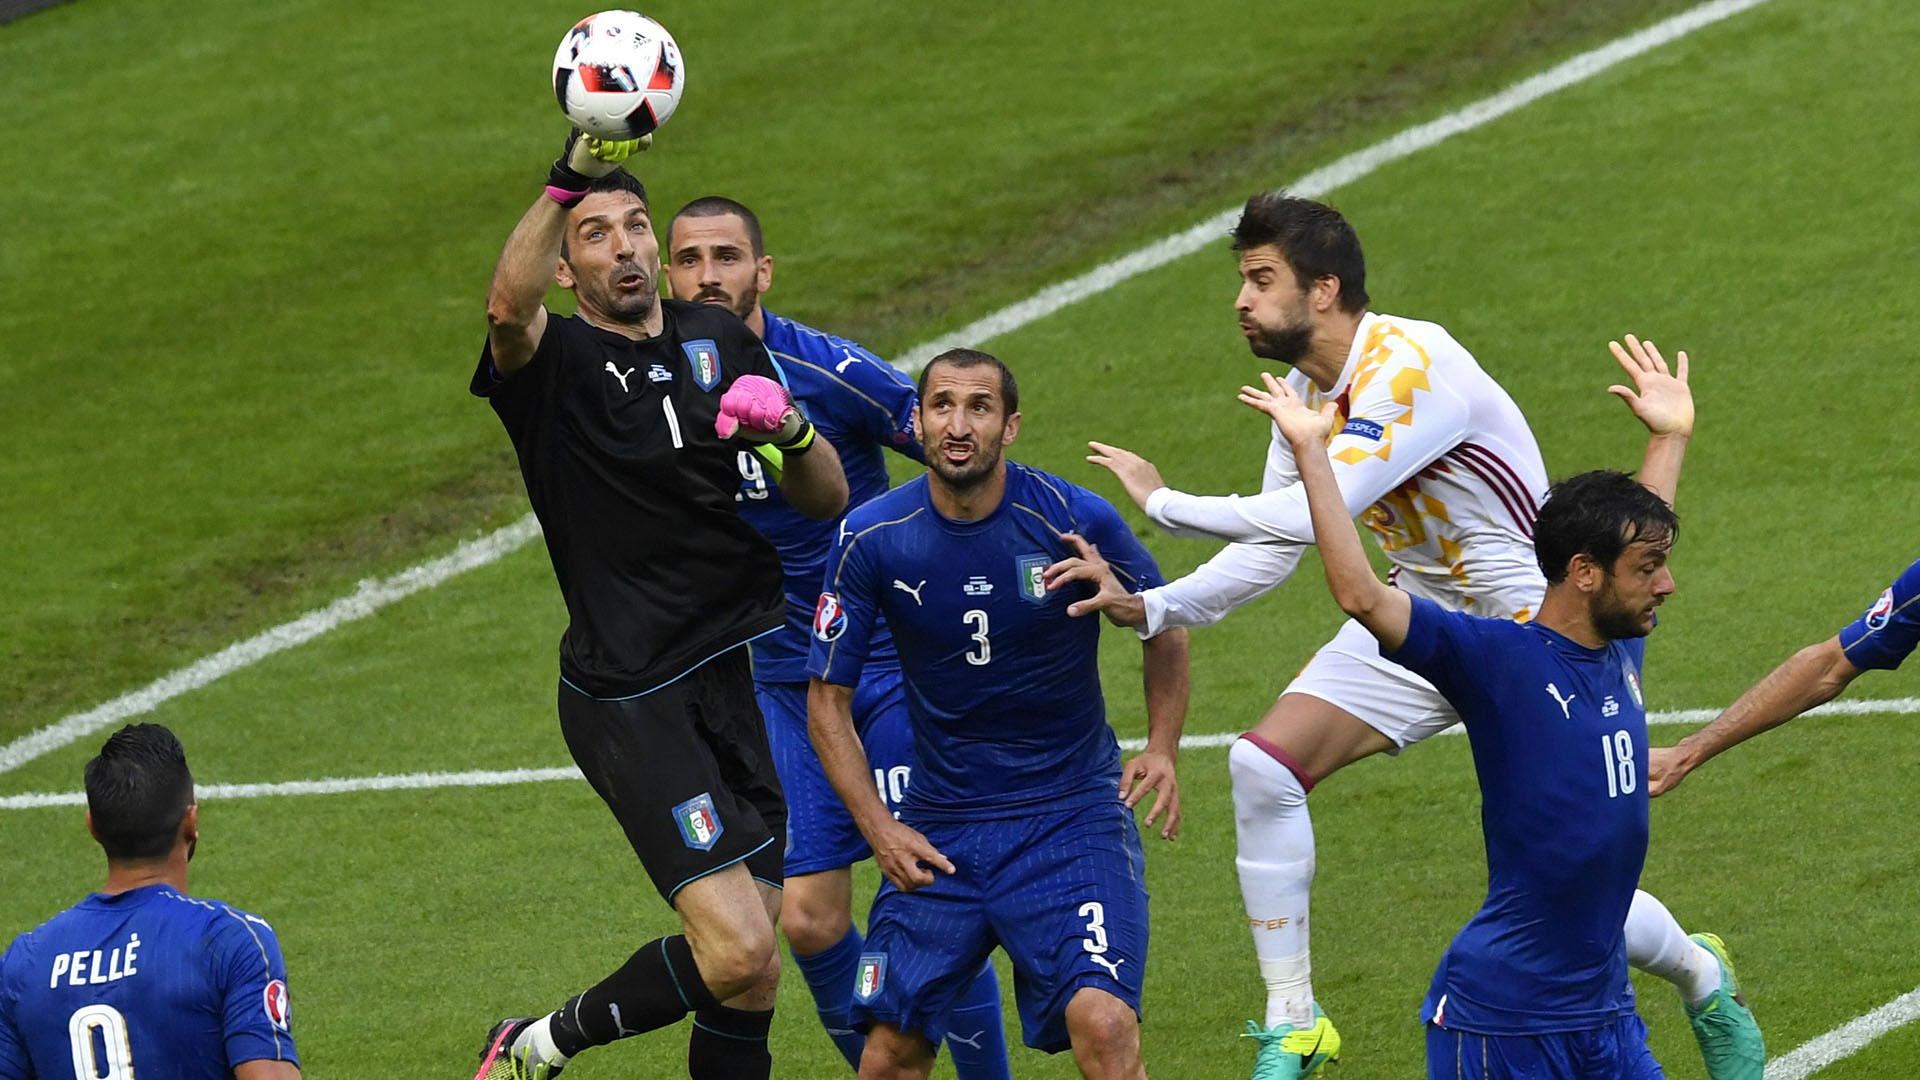 Italia V Spanyol Laporan Pertandingan 27 06 16 Kejuaraan Eropa